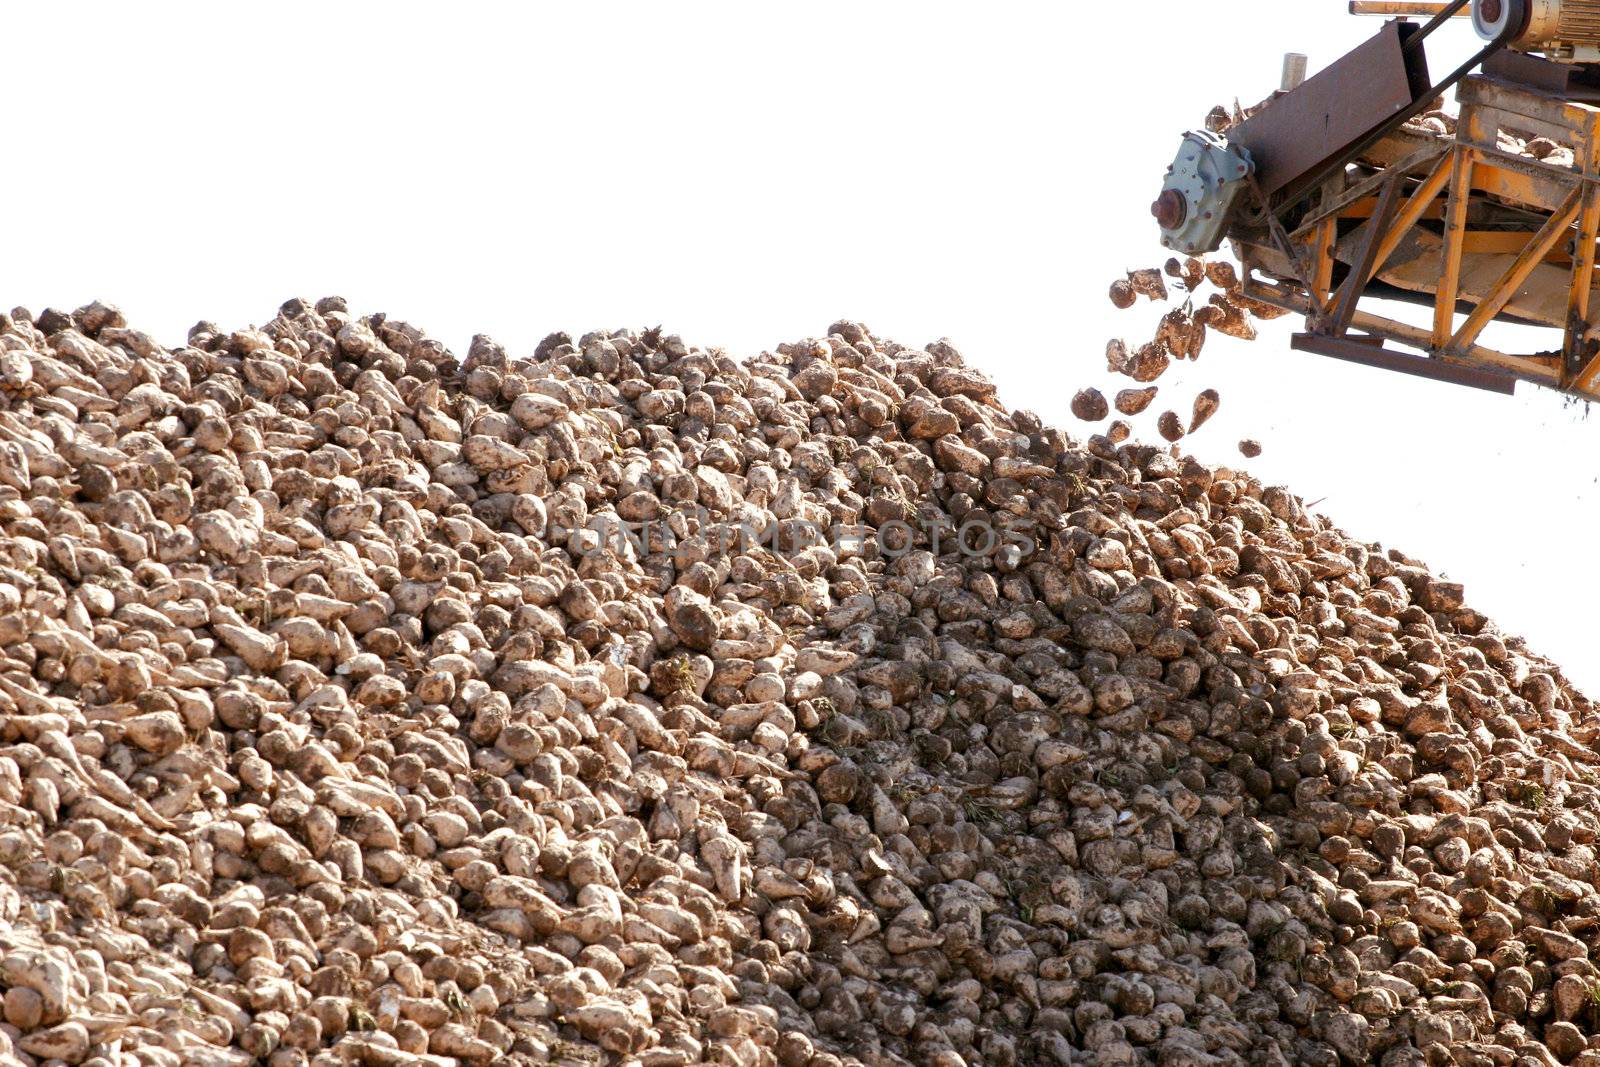 Sugar beets falling off conveyor belt into massive pile during harvest